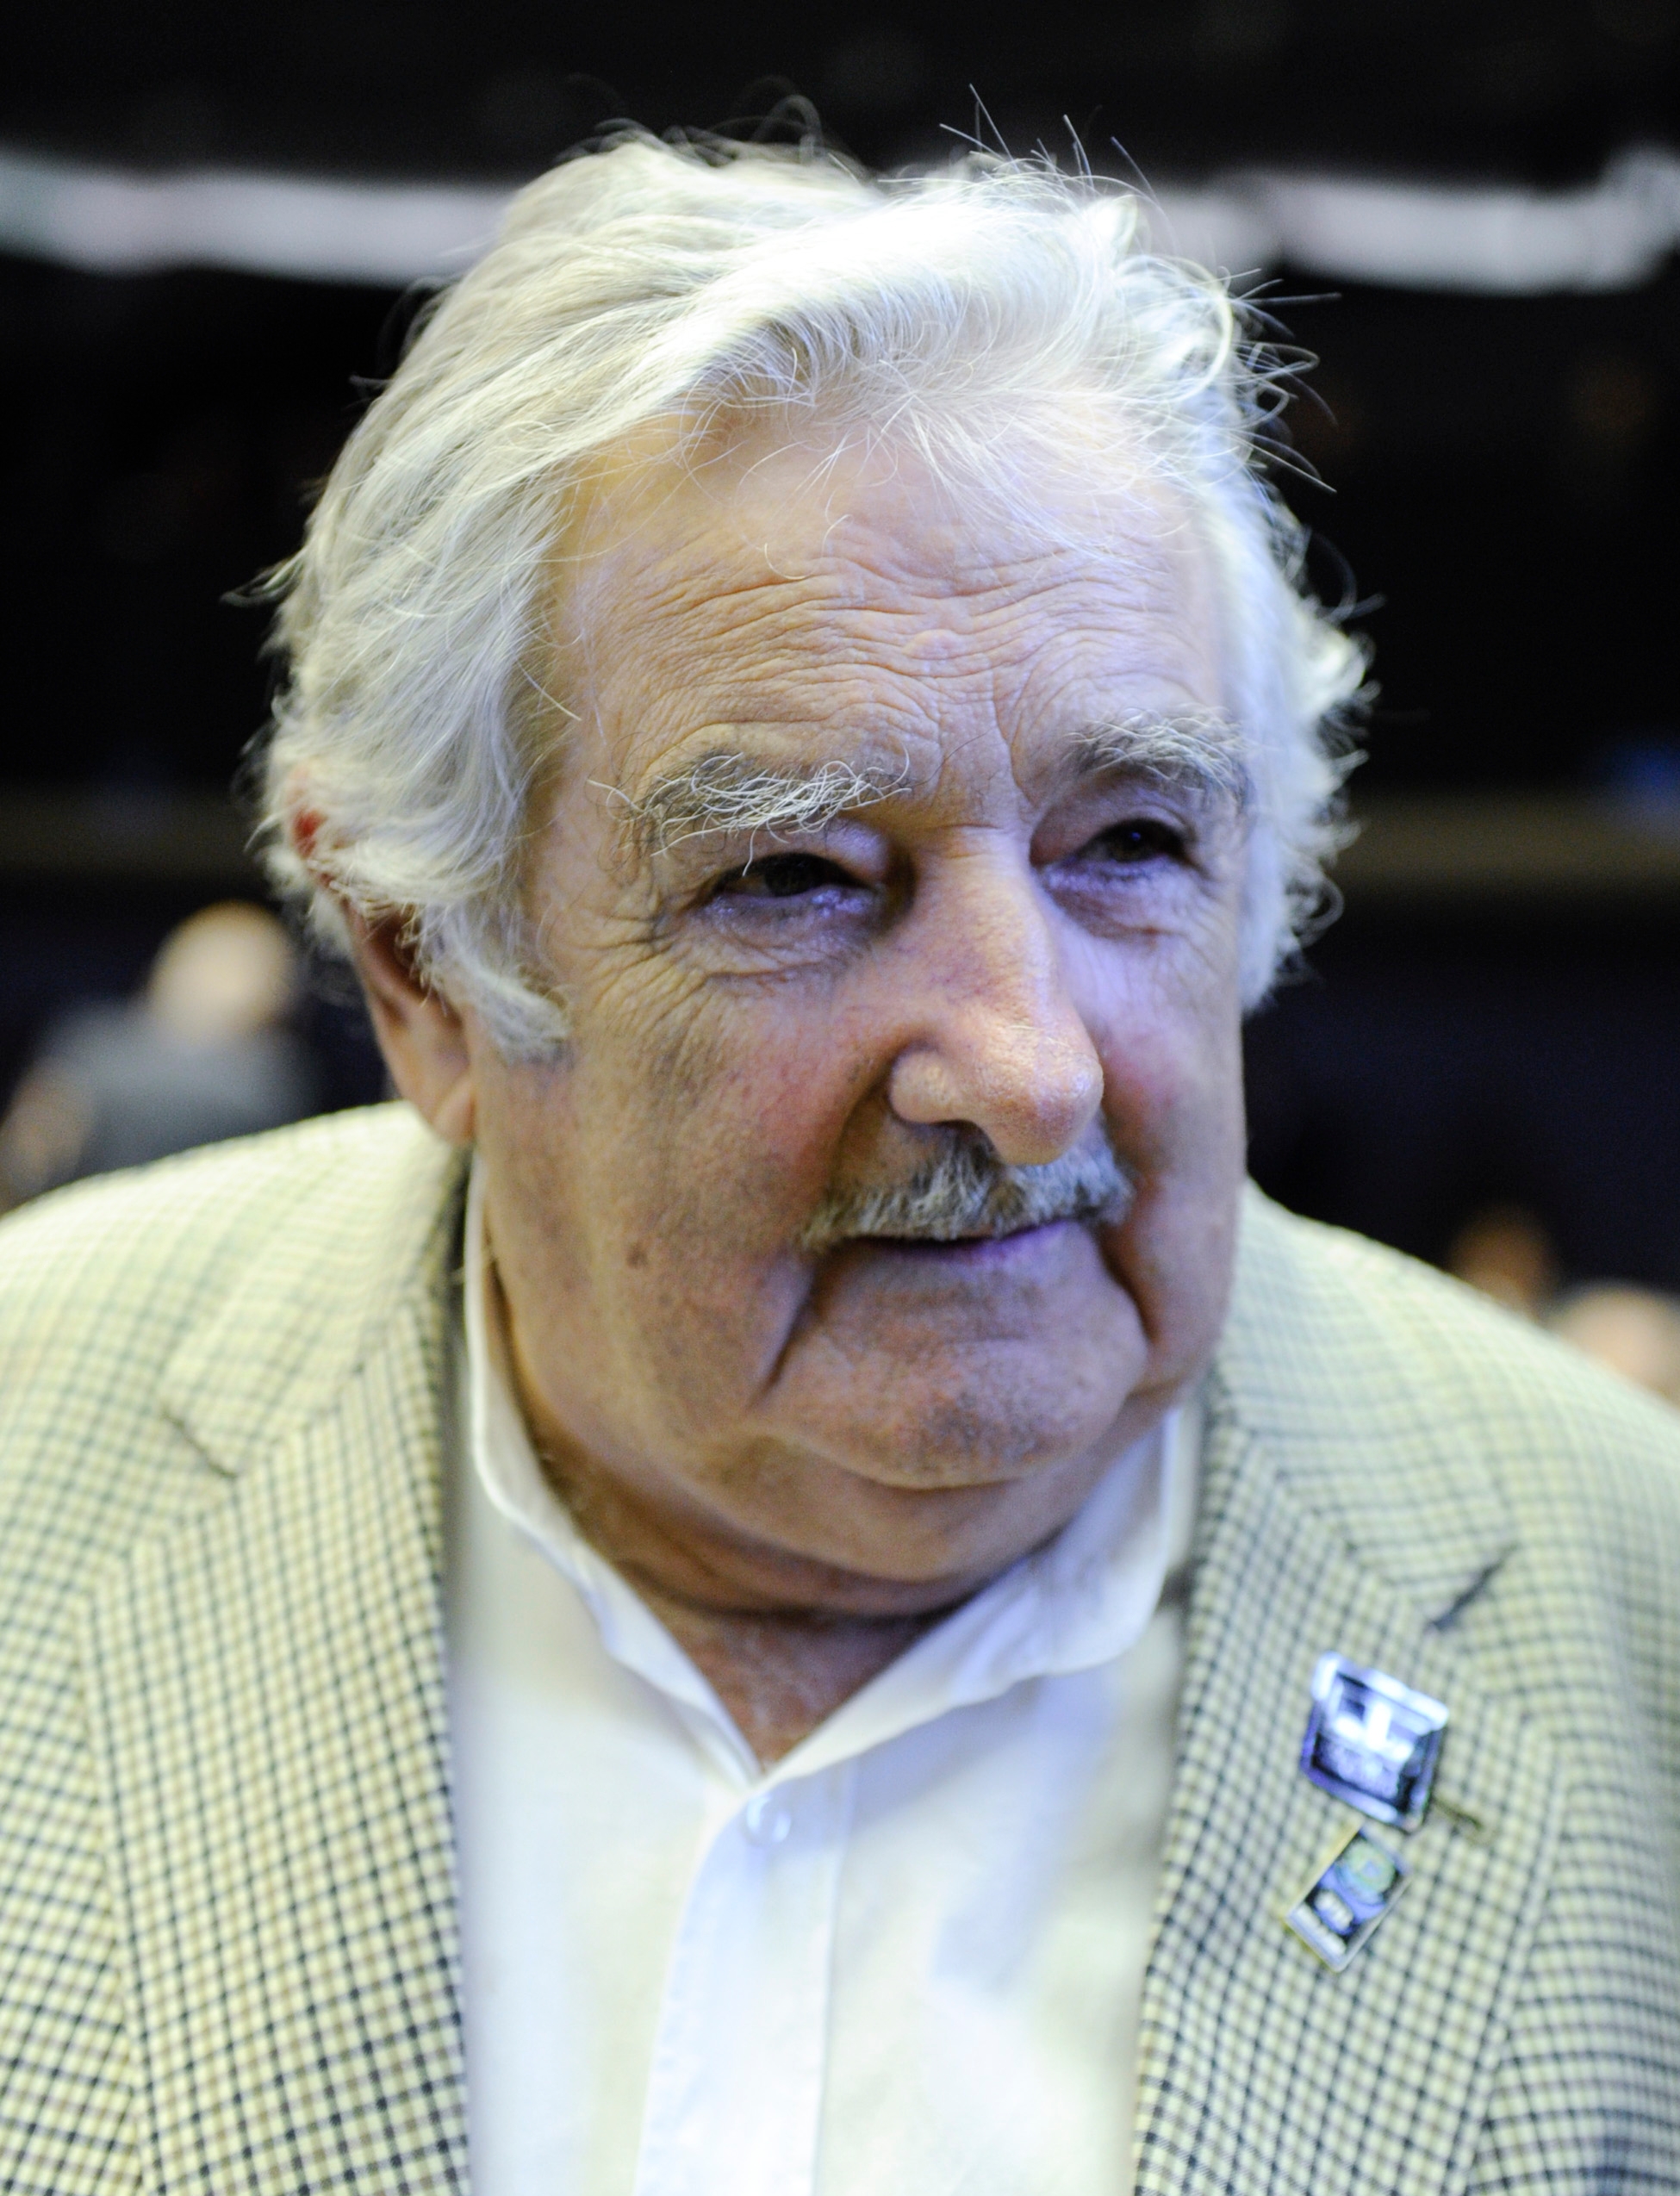 auteur Jose Mujica de la citation Il semble que nous ne sommes nés que pour consommer et consommer, et quand nous ne pouvons plus consommer, nous avons un sentiment de frustration, et nous souffrons de pauvreté, et nous sommes automatiquement marginalisés.